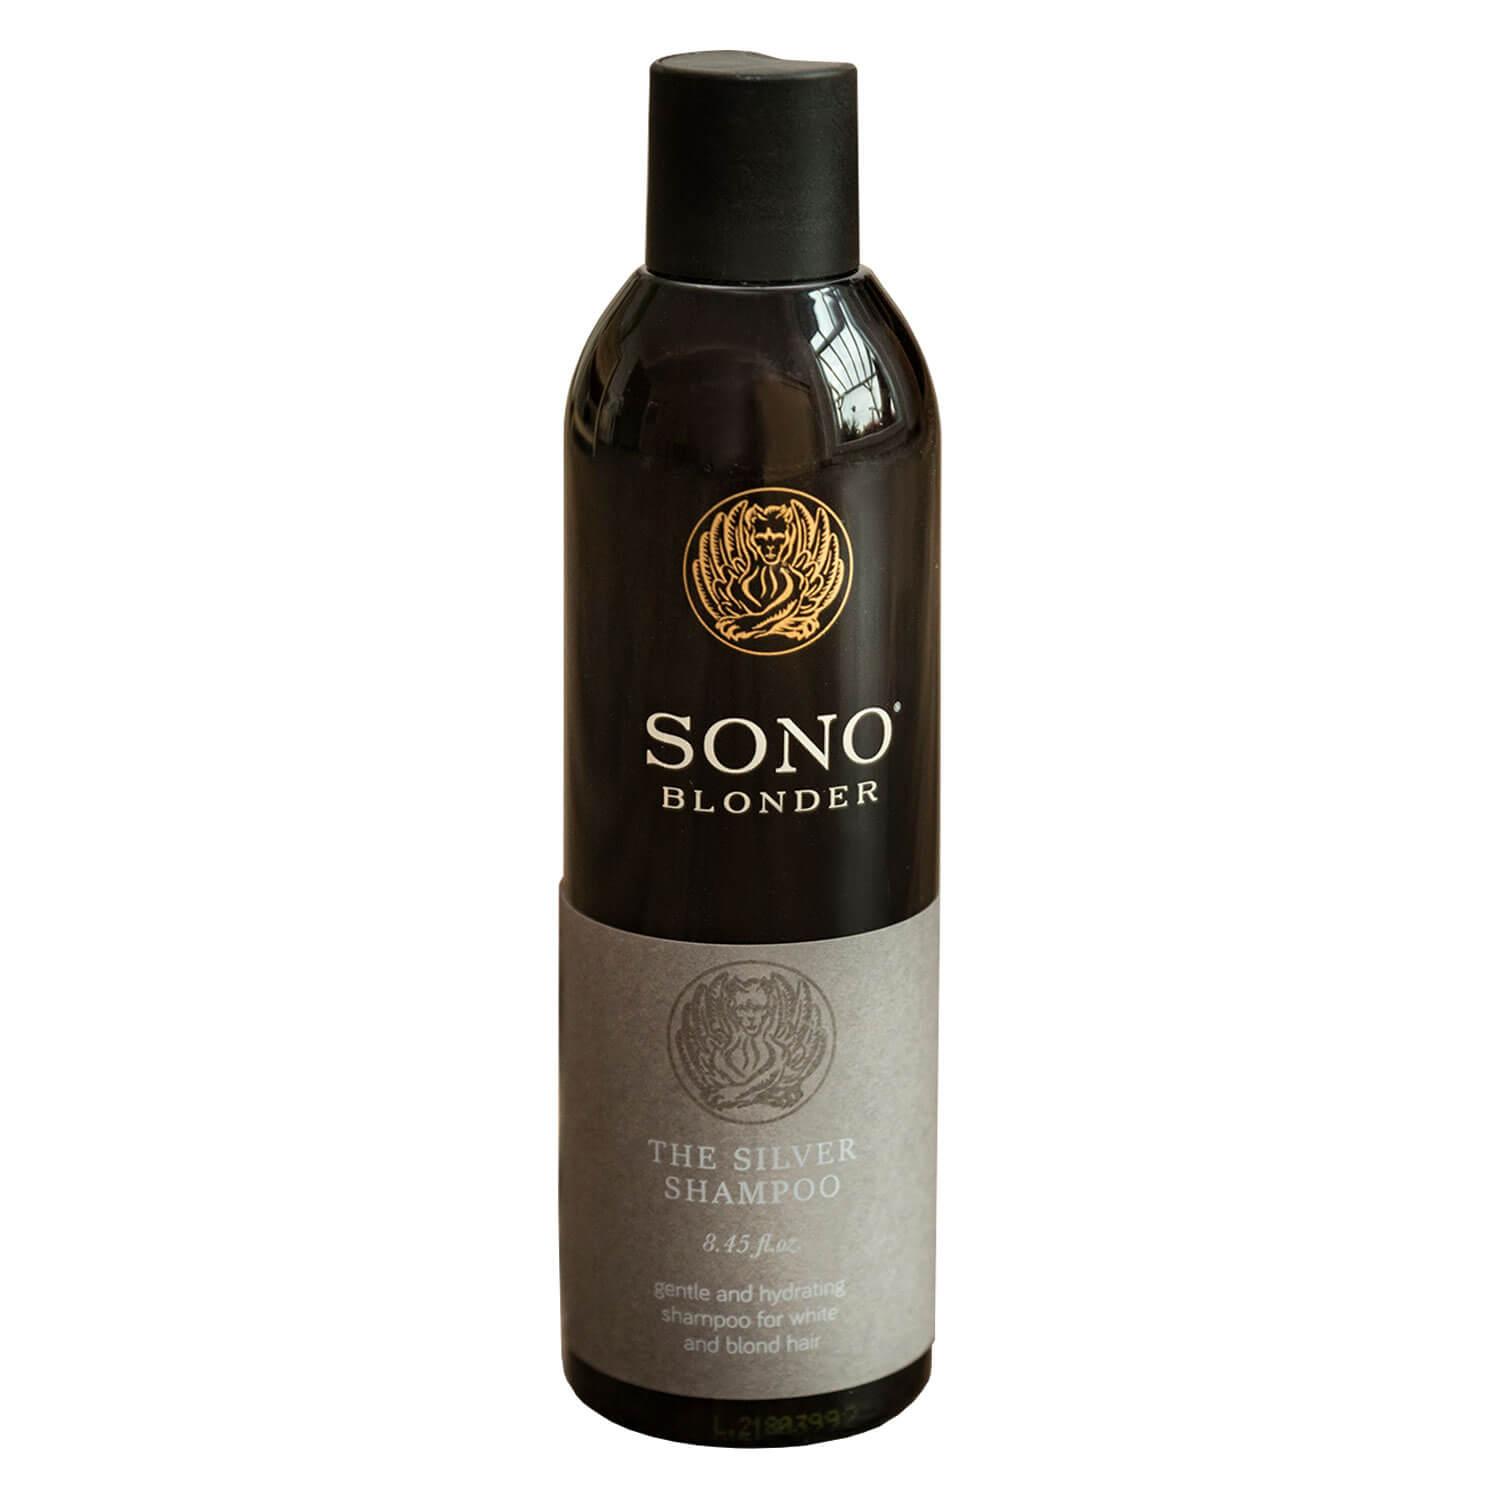 SONO Blonder - The Silver Shampoo